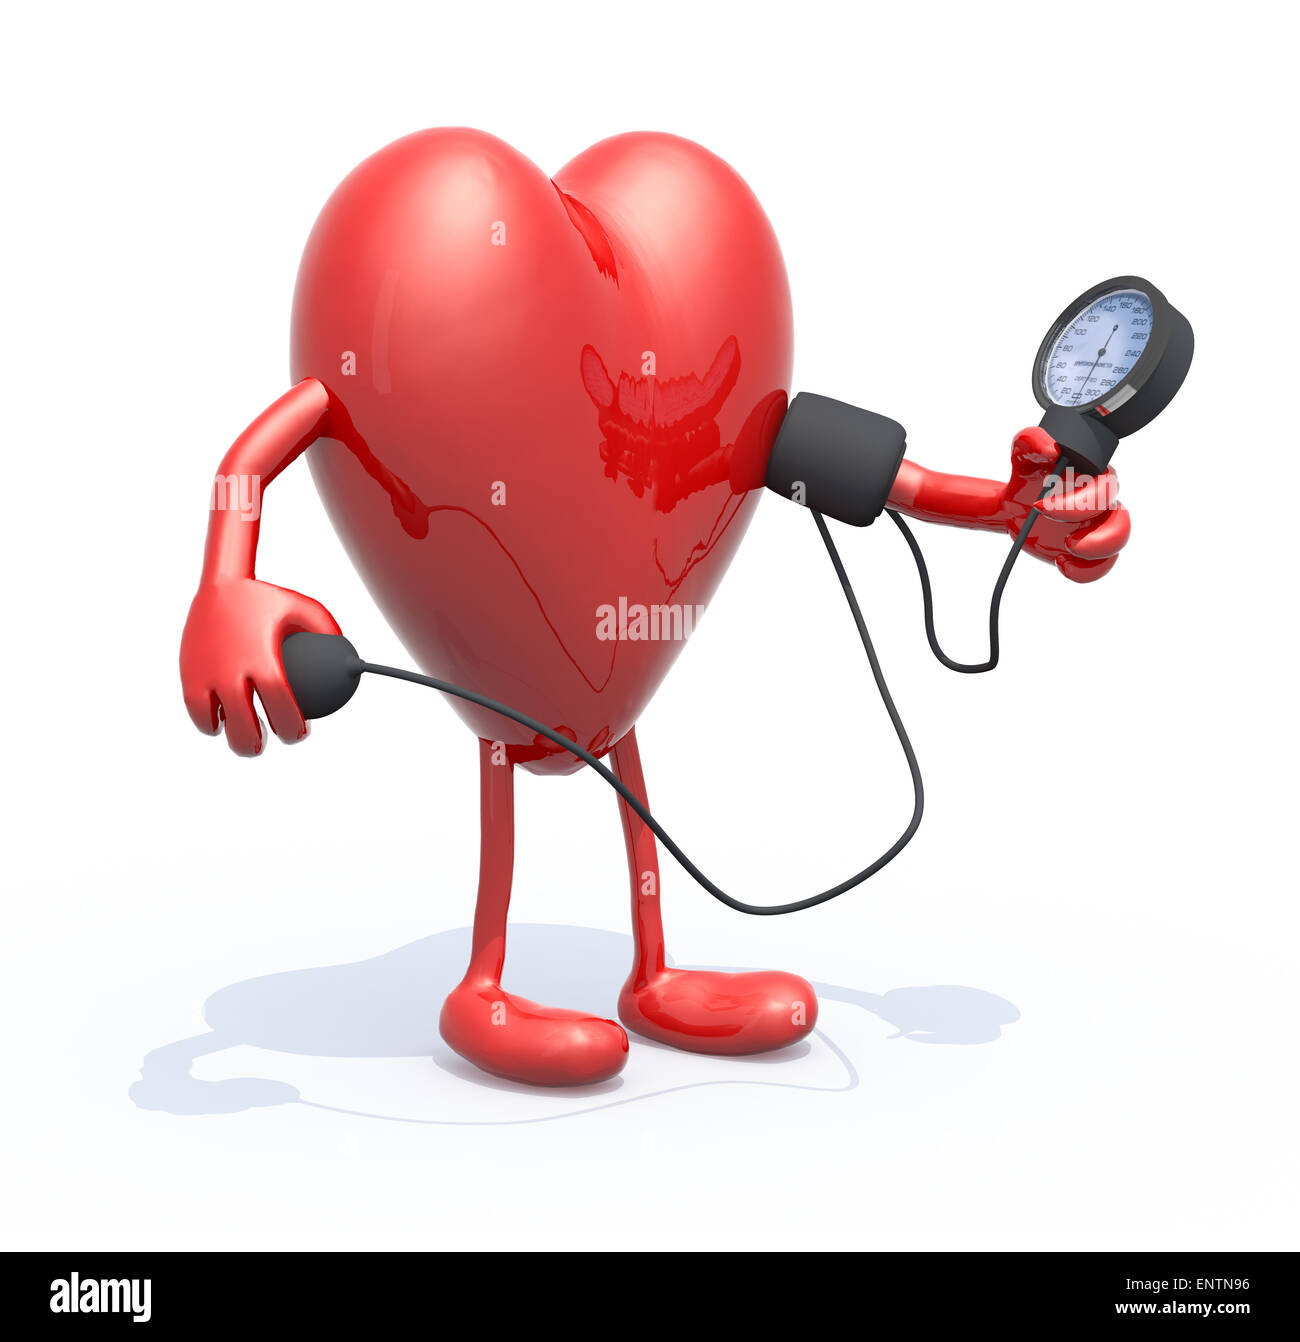 Herz mit Armen und Beinen, die Messung des Blutdrucks, isolierte 3D-Illustration Stockfoto